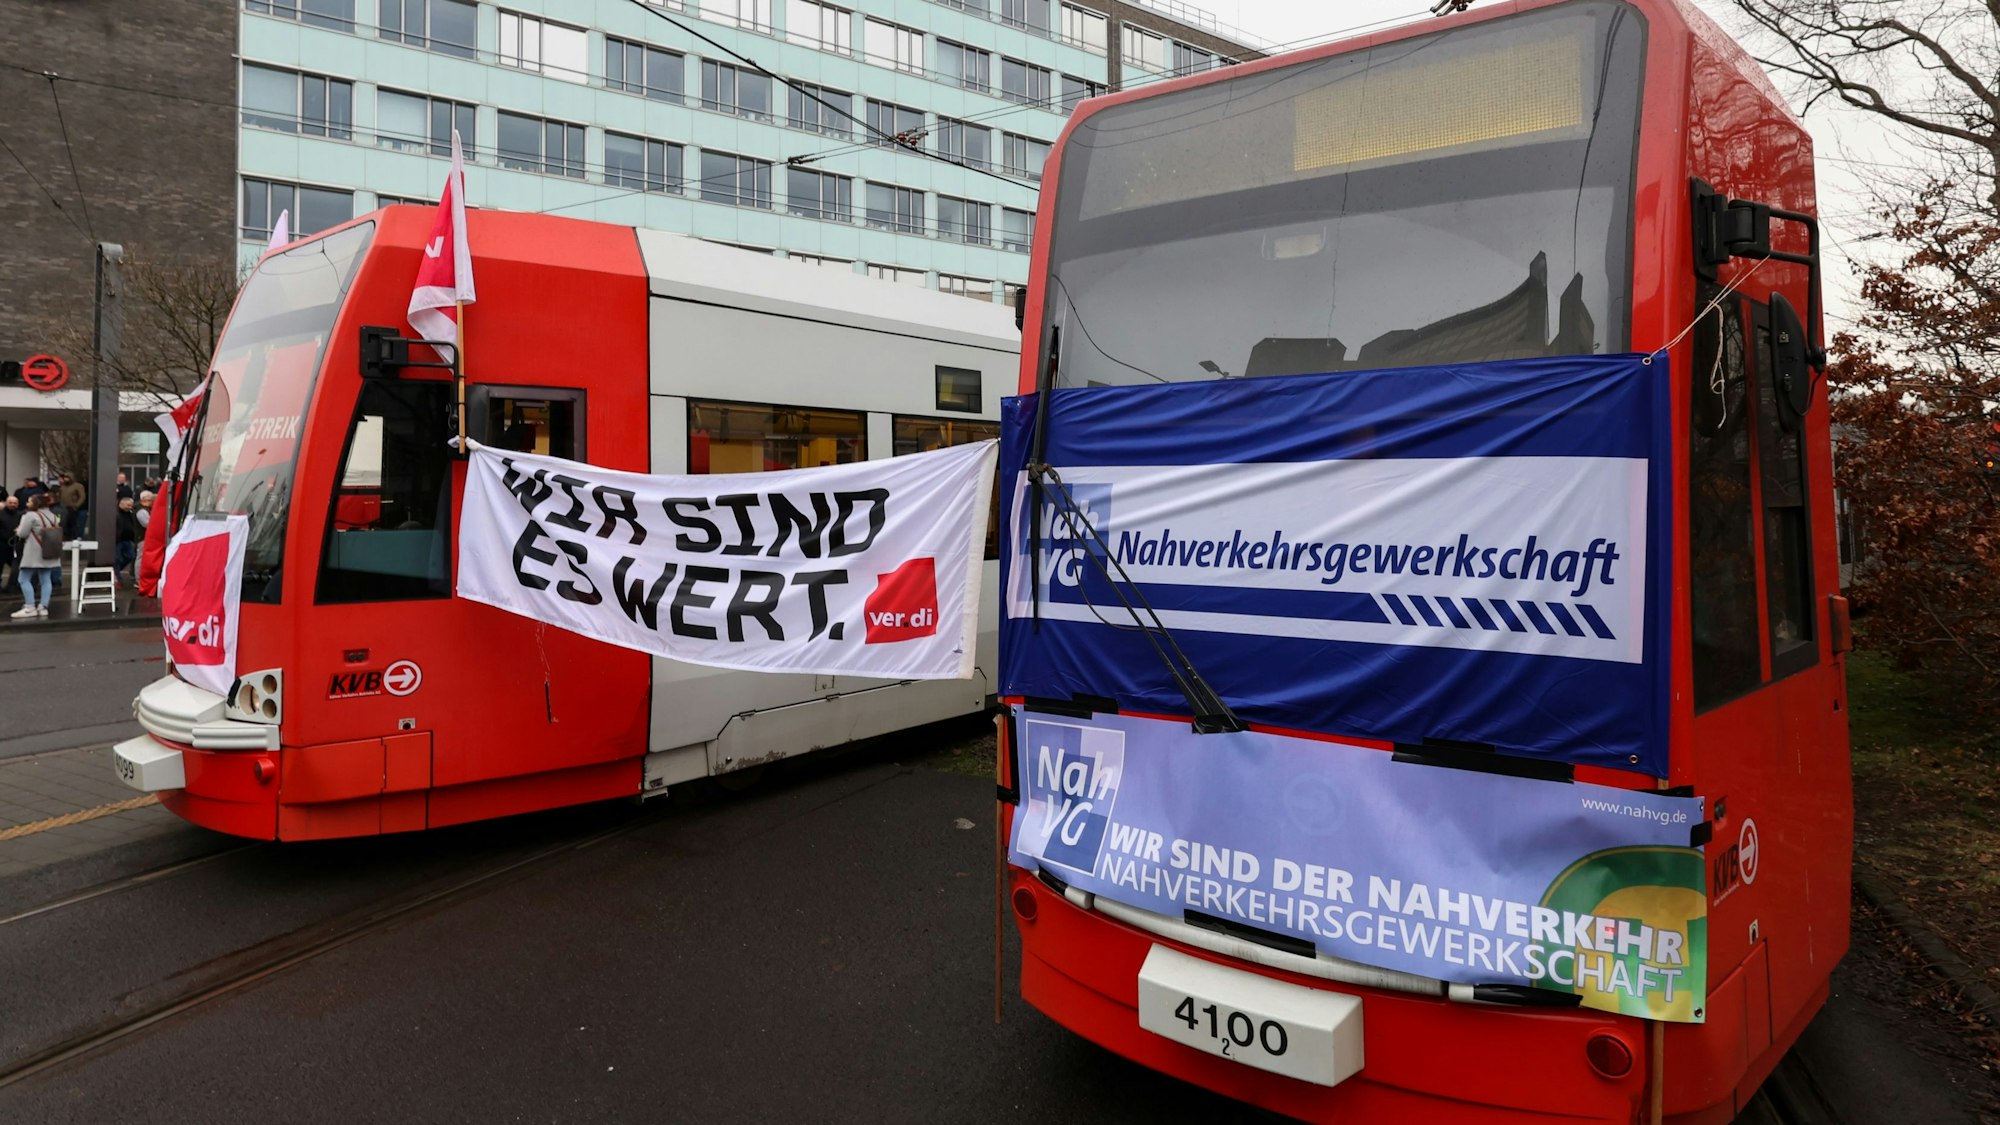 Zwischen zwei Bahnen der Kölner Verkehrs-Betriebe (KVB) hängt ein Plakat der Gewerkschaft Verdi, auf dem „Wir sind es wert“ geschrieben steht. Die Beschäftigten im öffentlichen Nahverkehr in Nordrhein-Westfalen streiken für bessere Arbeitsbedingungen.